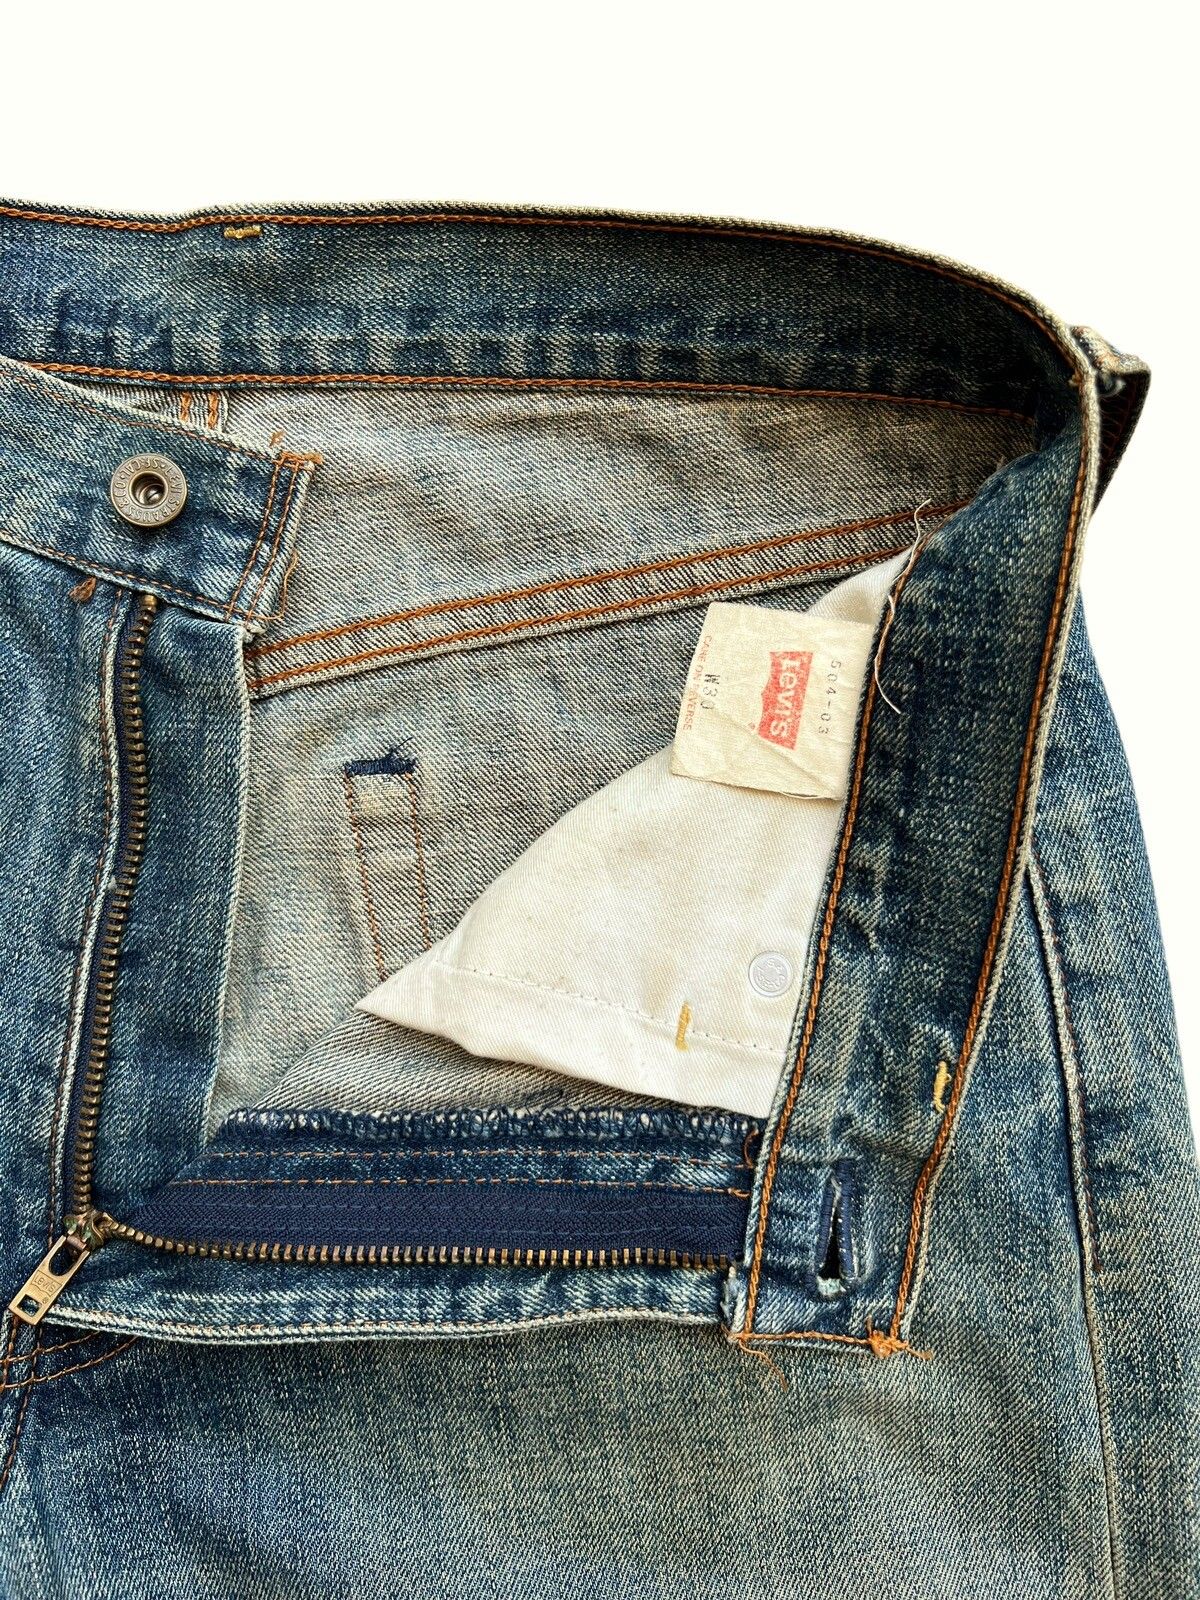 Vintage 90s Levis Distressed Mudwash Patch Denim Jeans 30x35 - 13